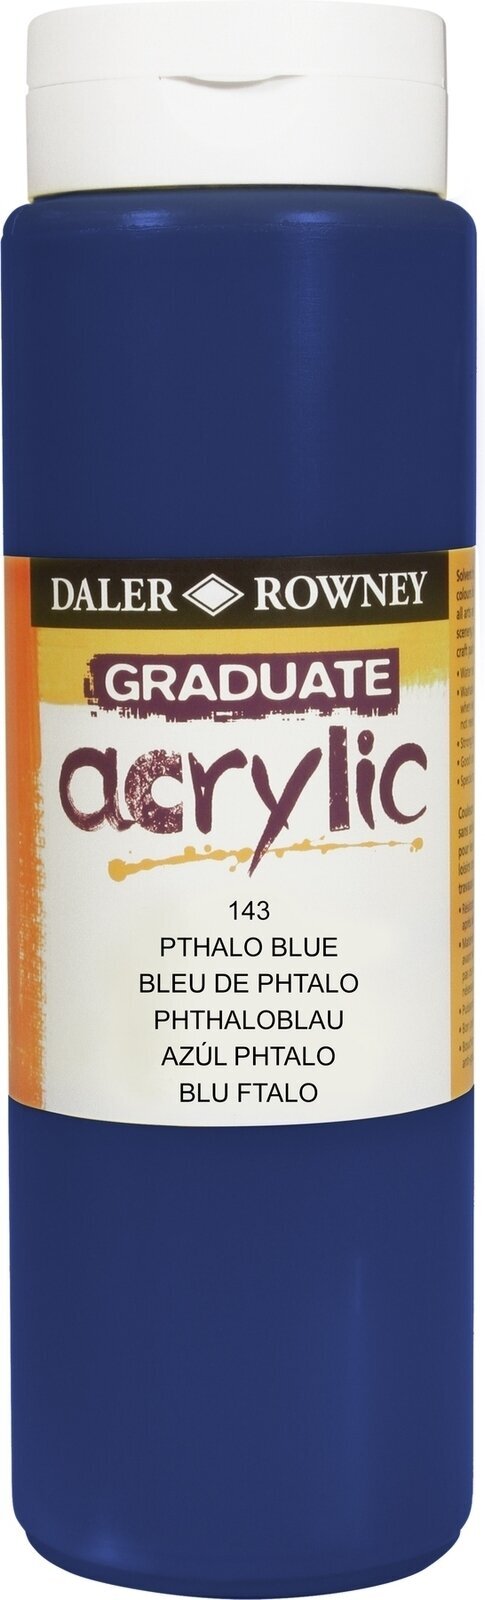 Akrylmaling Daler Rowney Graduate Akrylmaling Phthalo Blue 500 ml 1 stk.